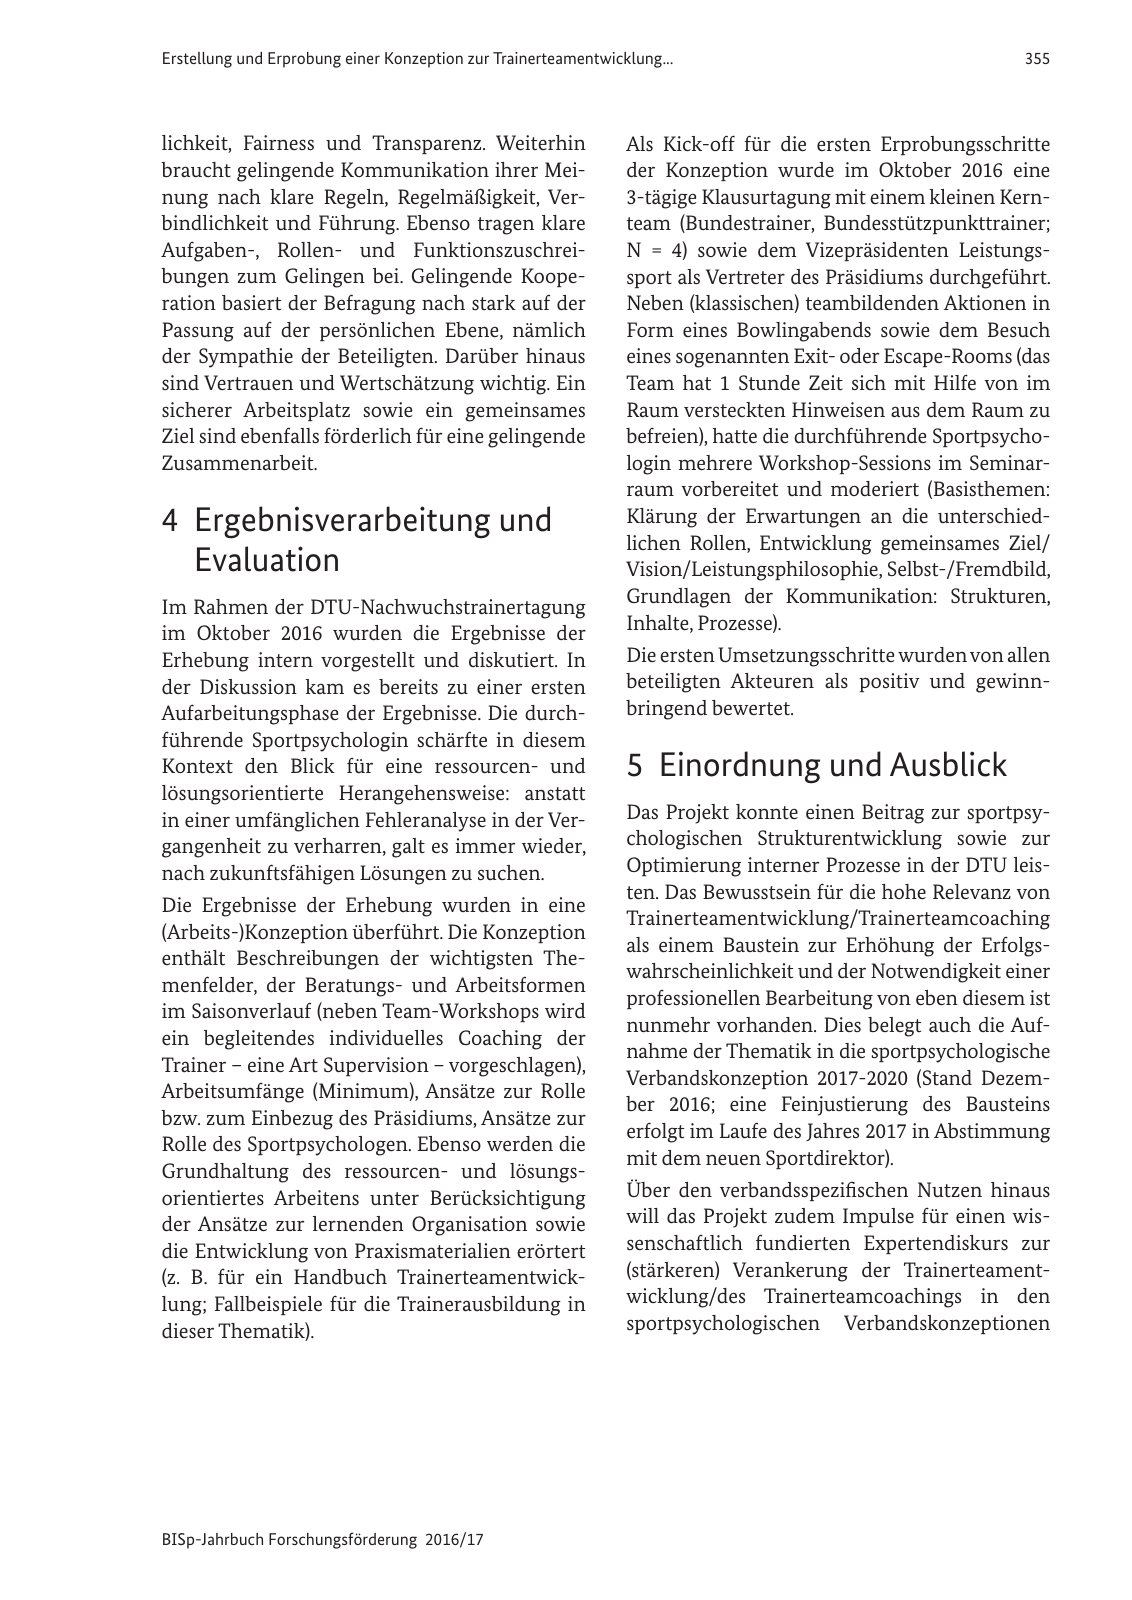 Vorschau BISp-Jahrbuch 2016/2017 Seite 357